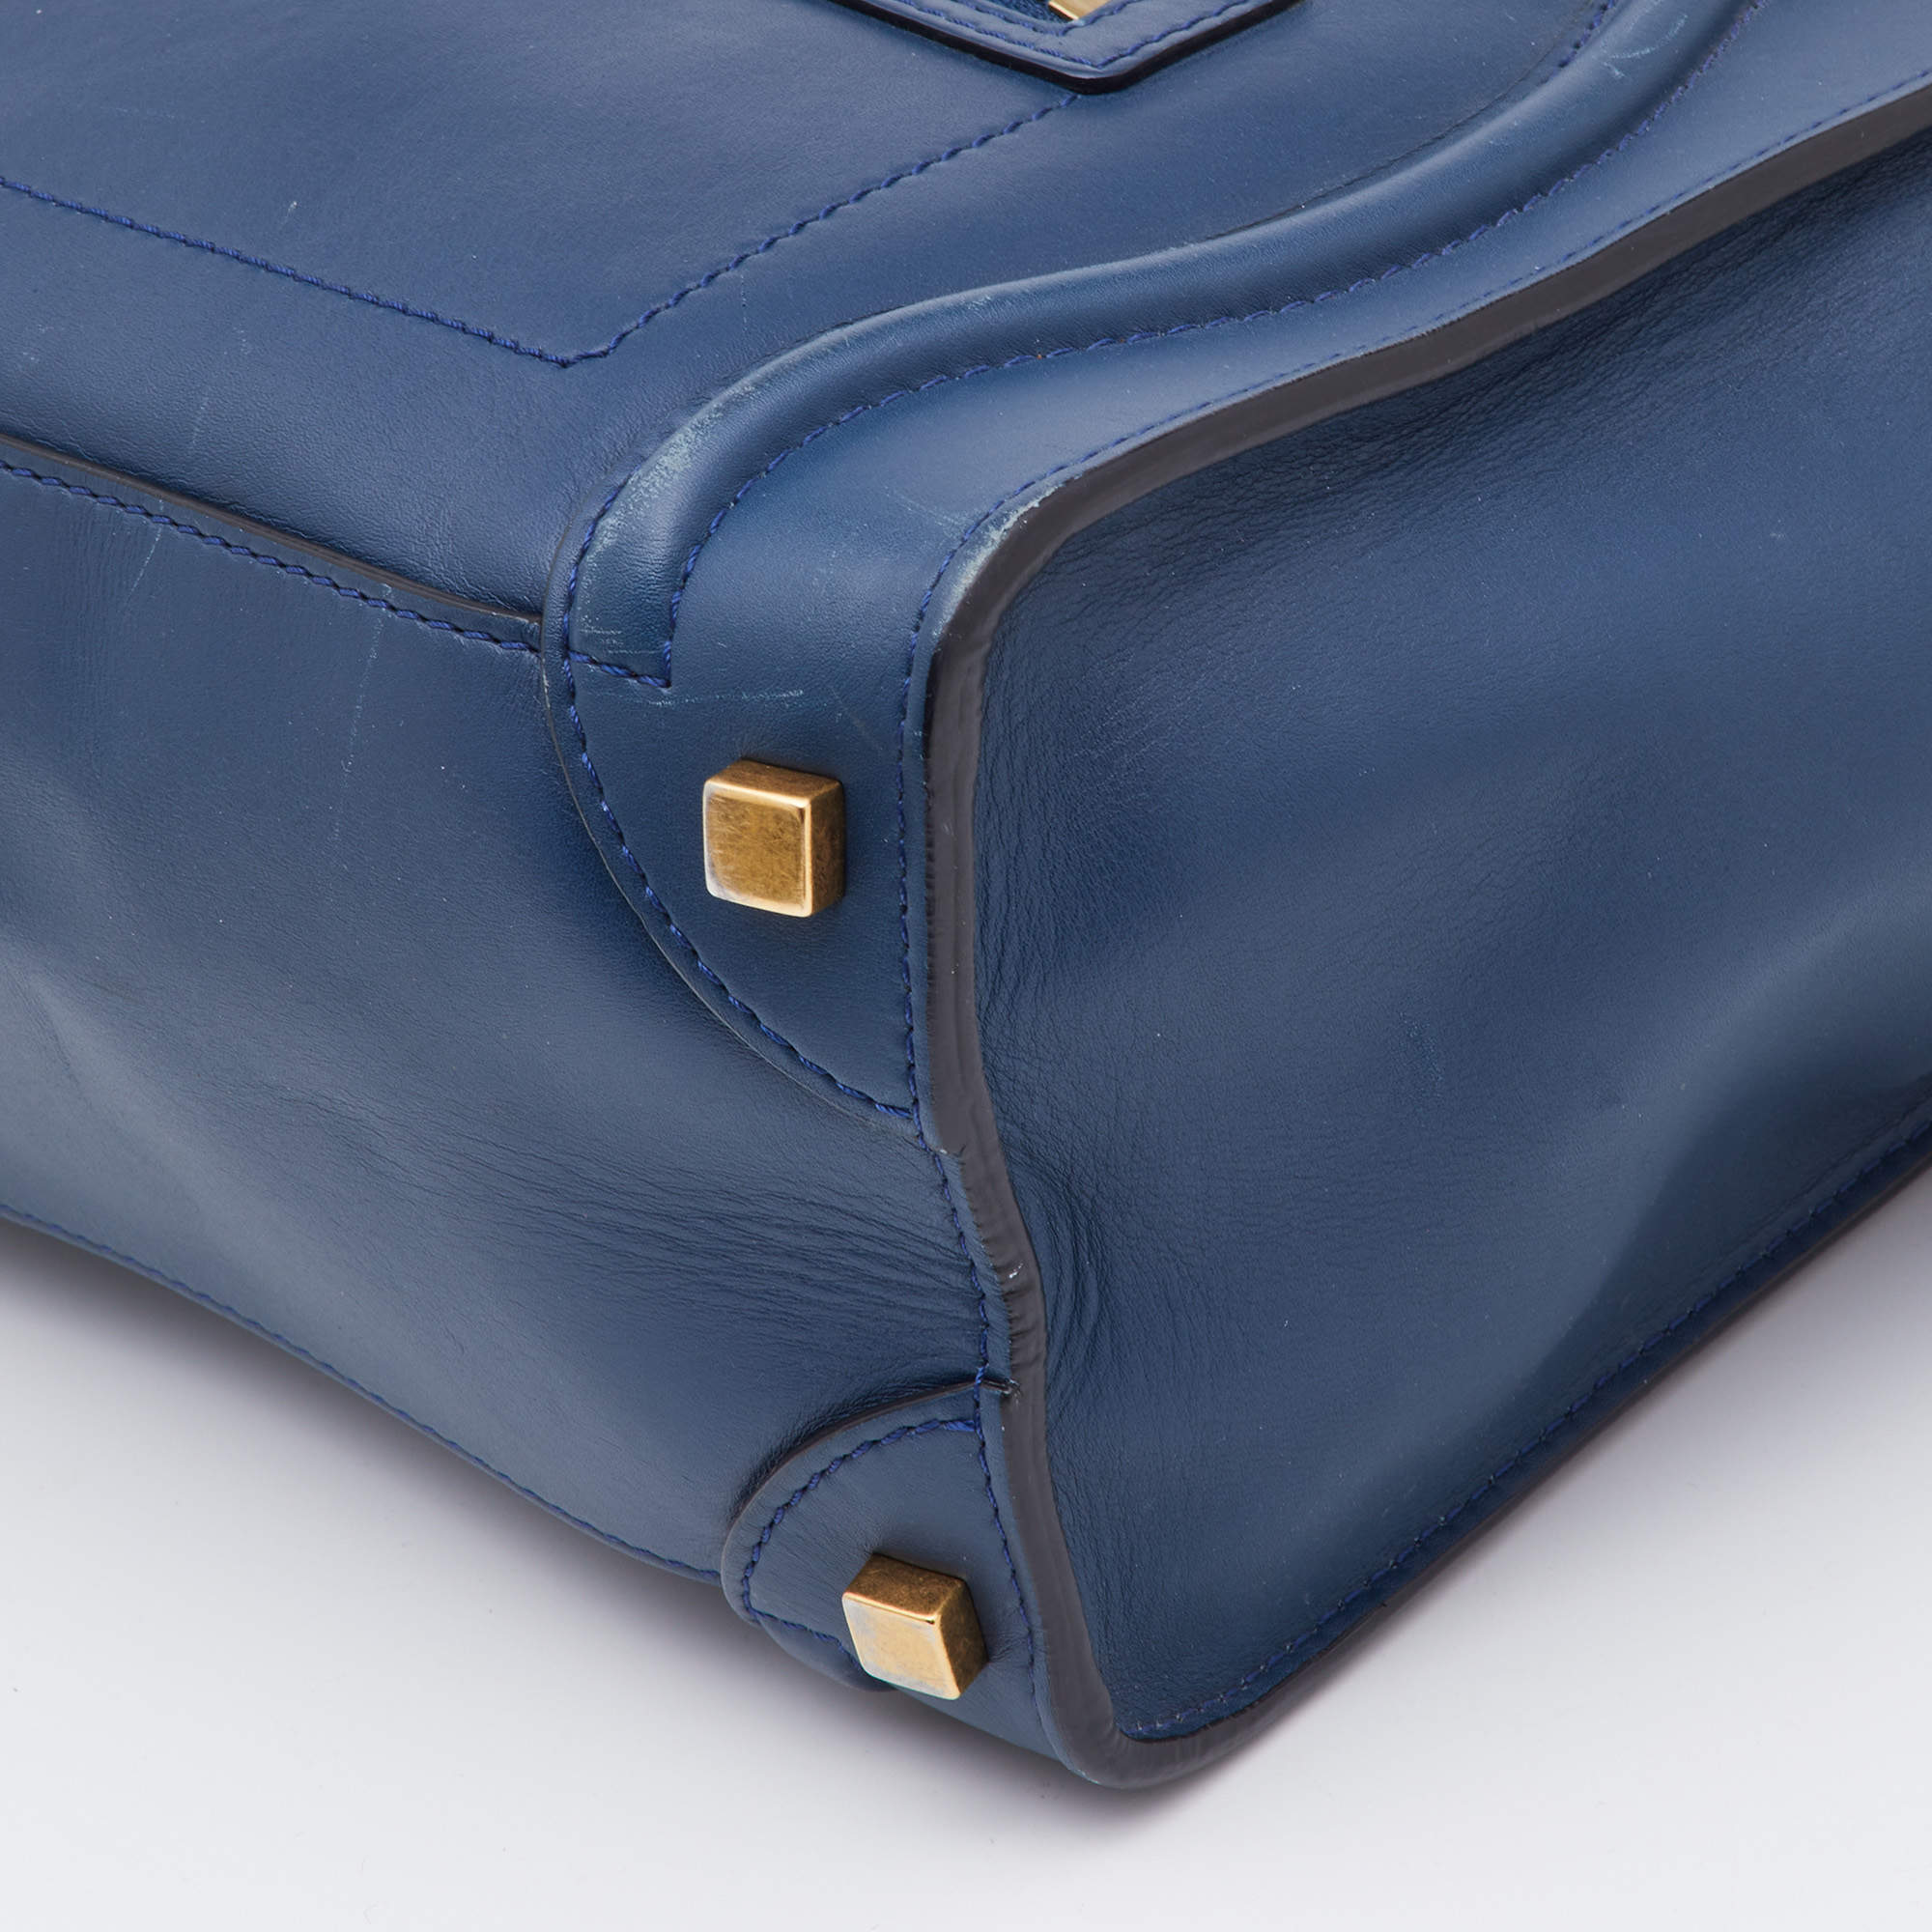 Celine Light Purple Calfskin Micro Luggage Tote Bag – BRANDS N BAGS